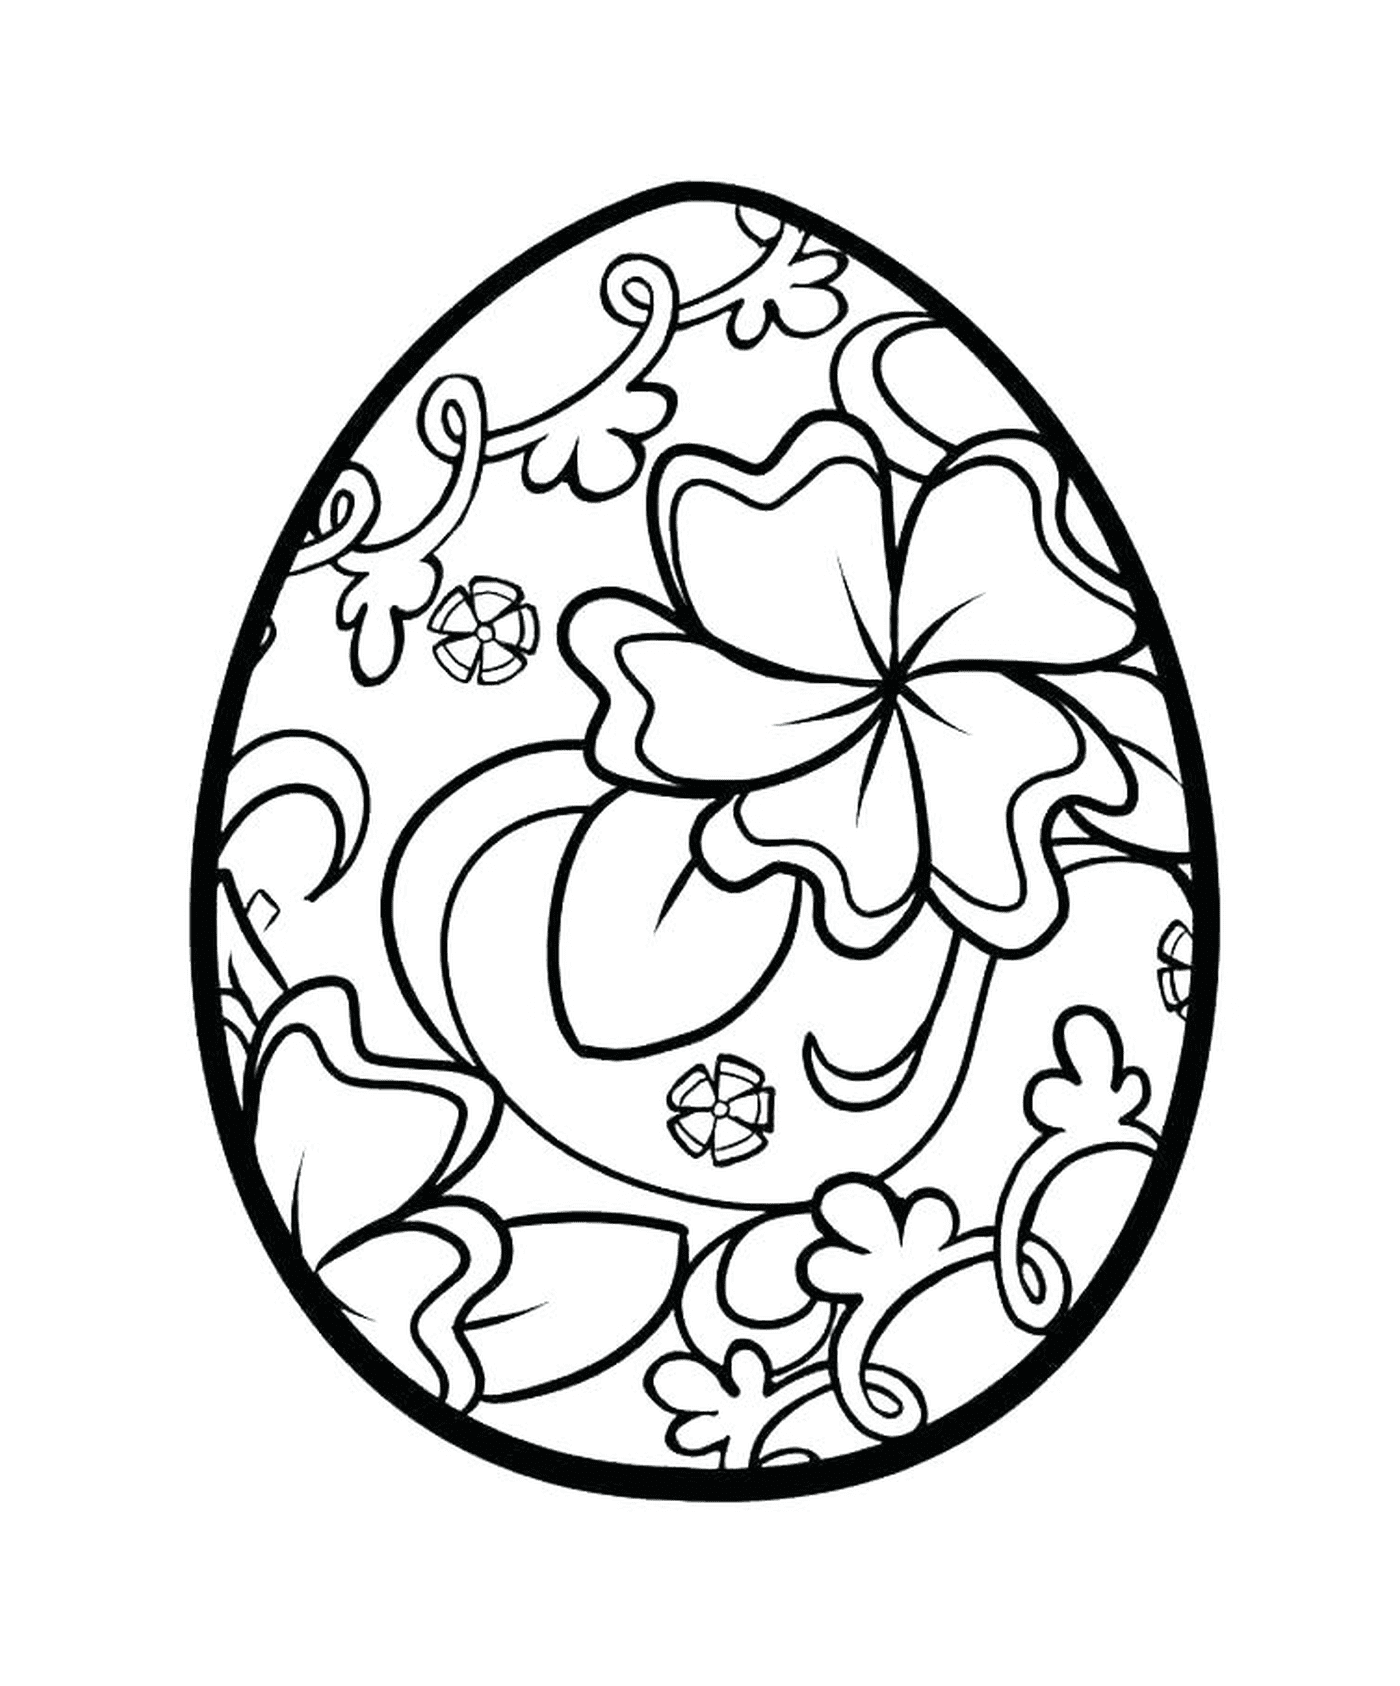  Uova di Pasqua con motivo floreale 